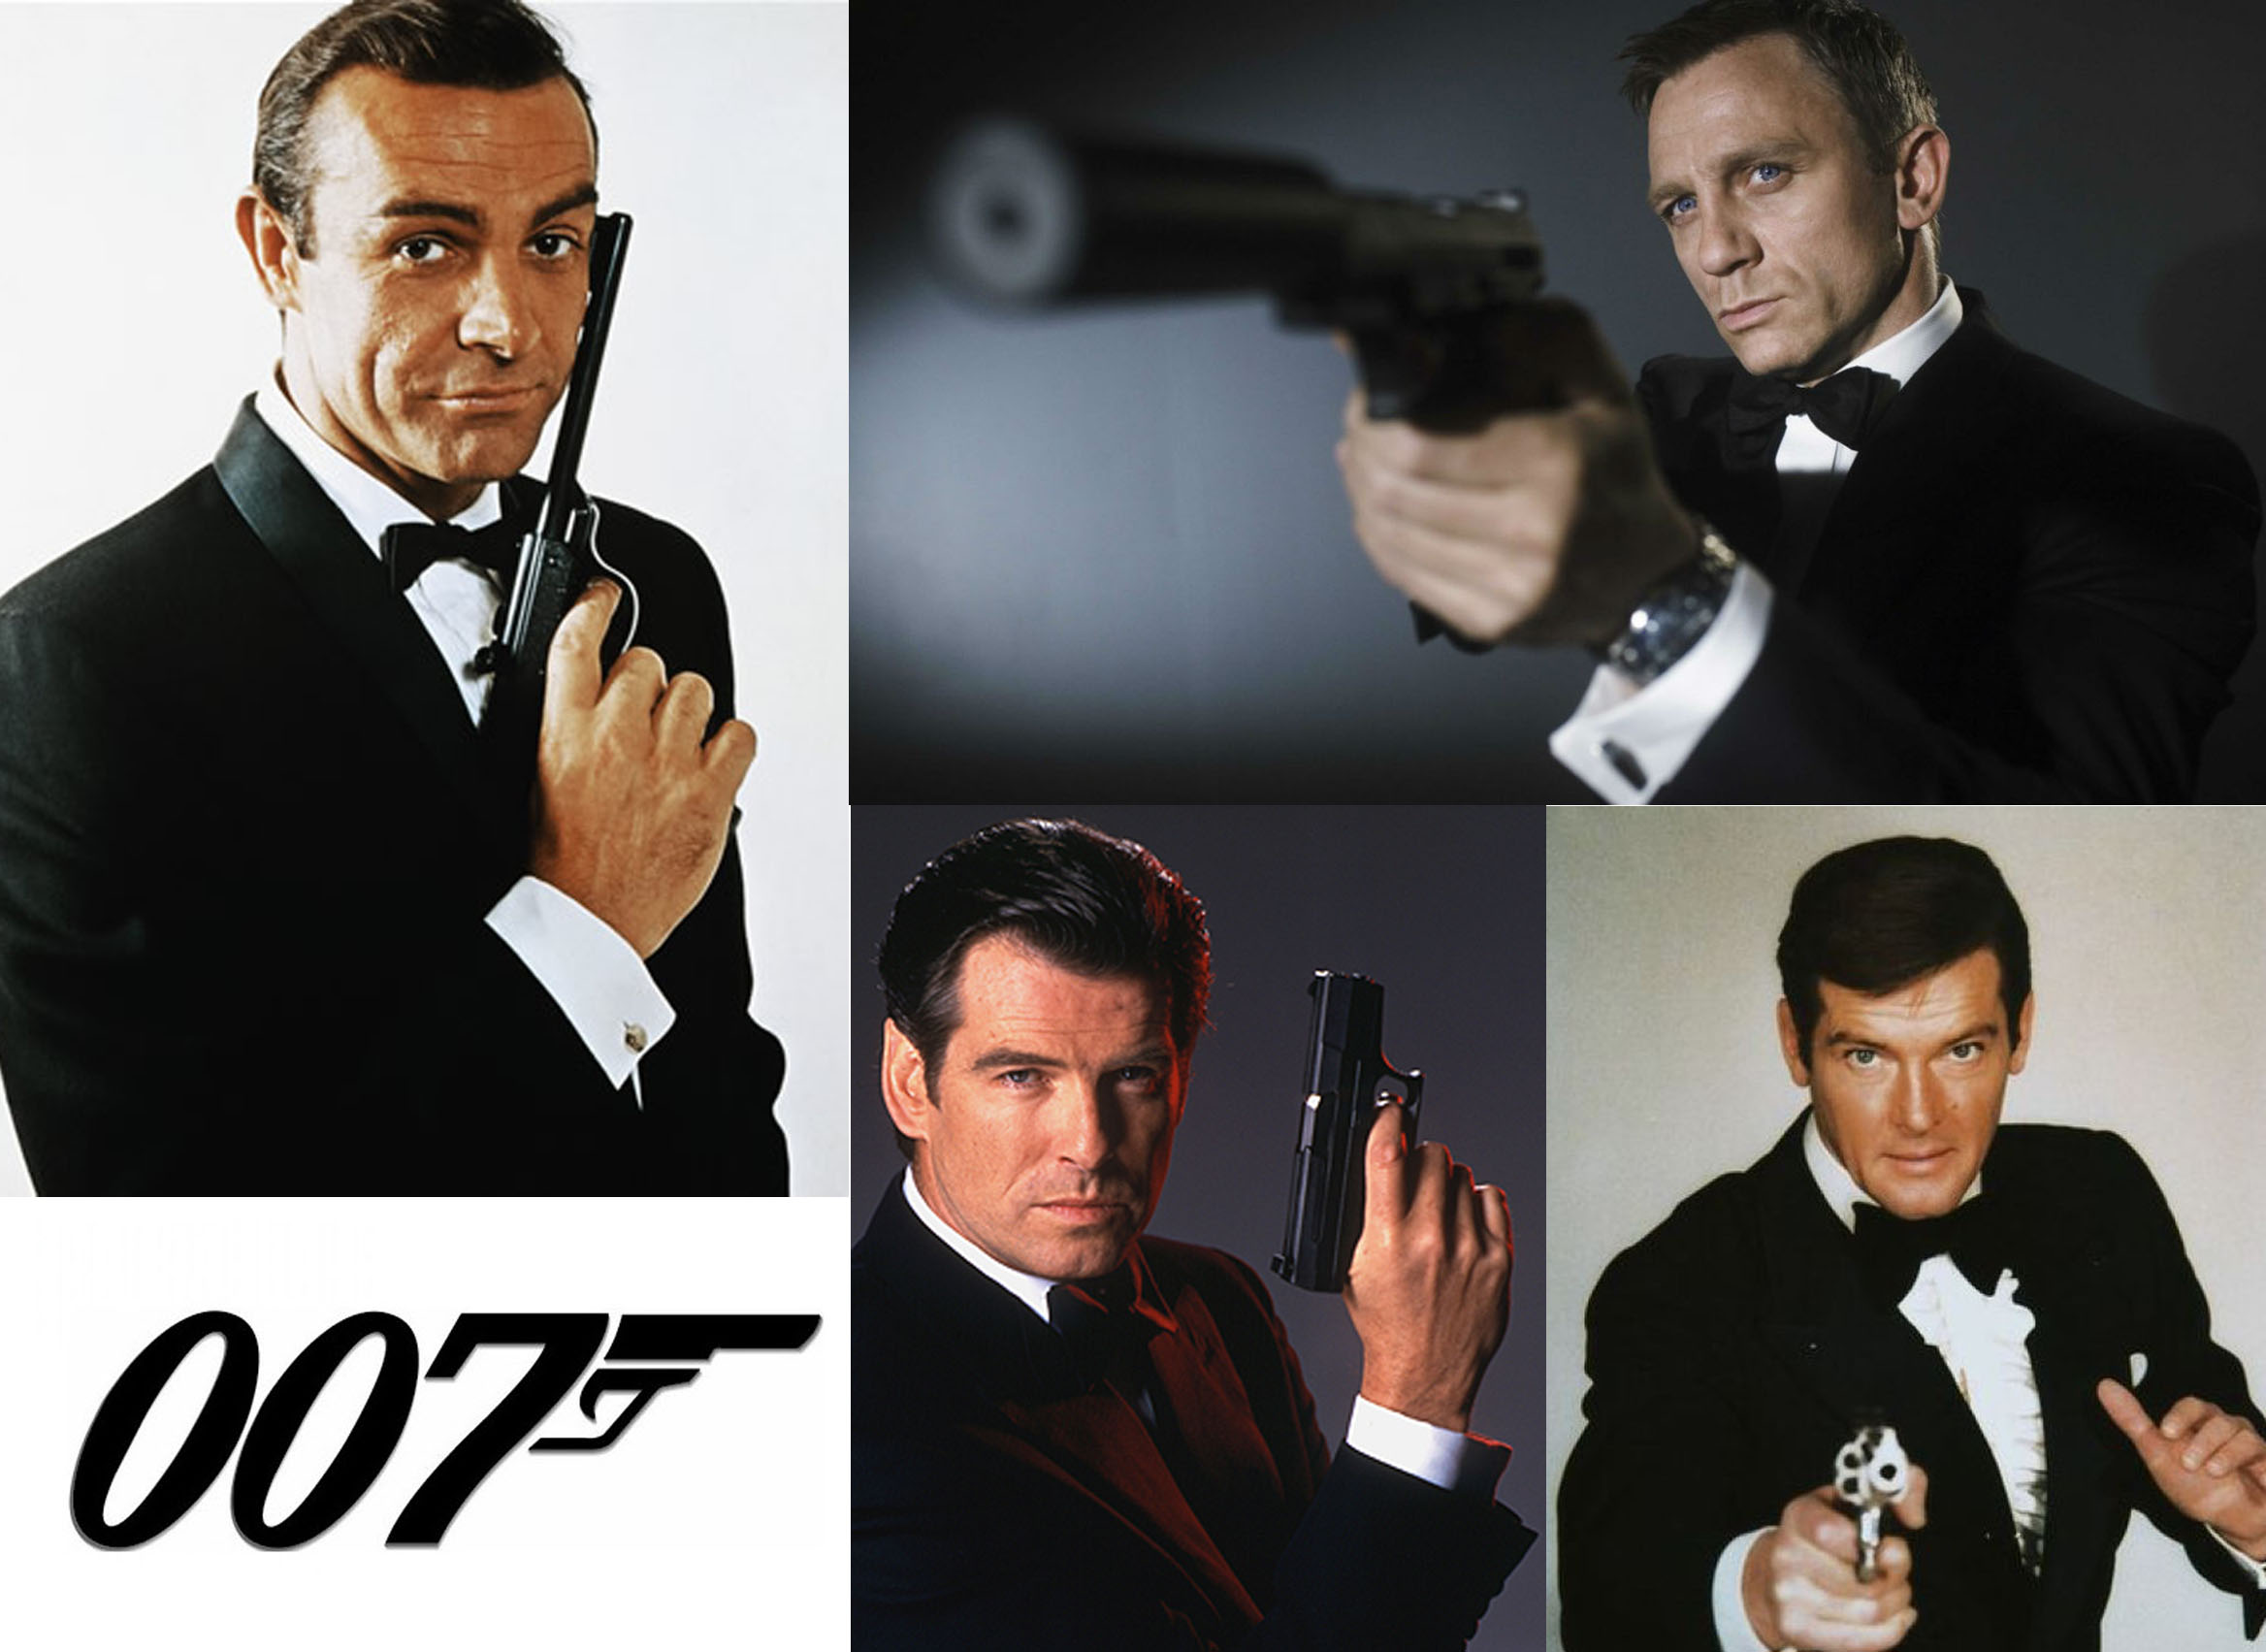 007 oscar tribute